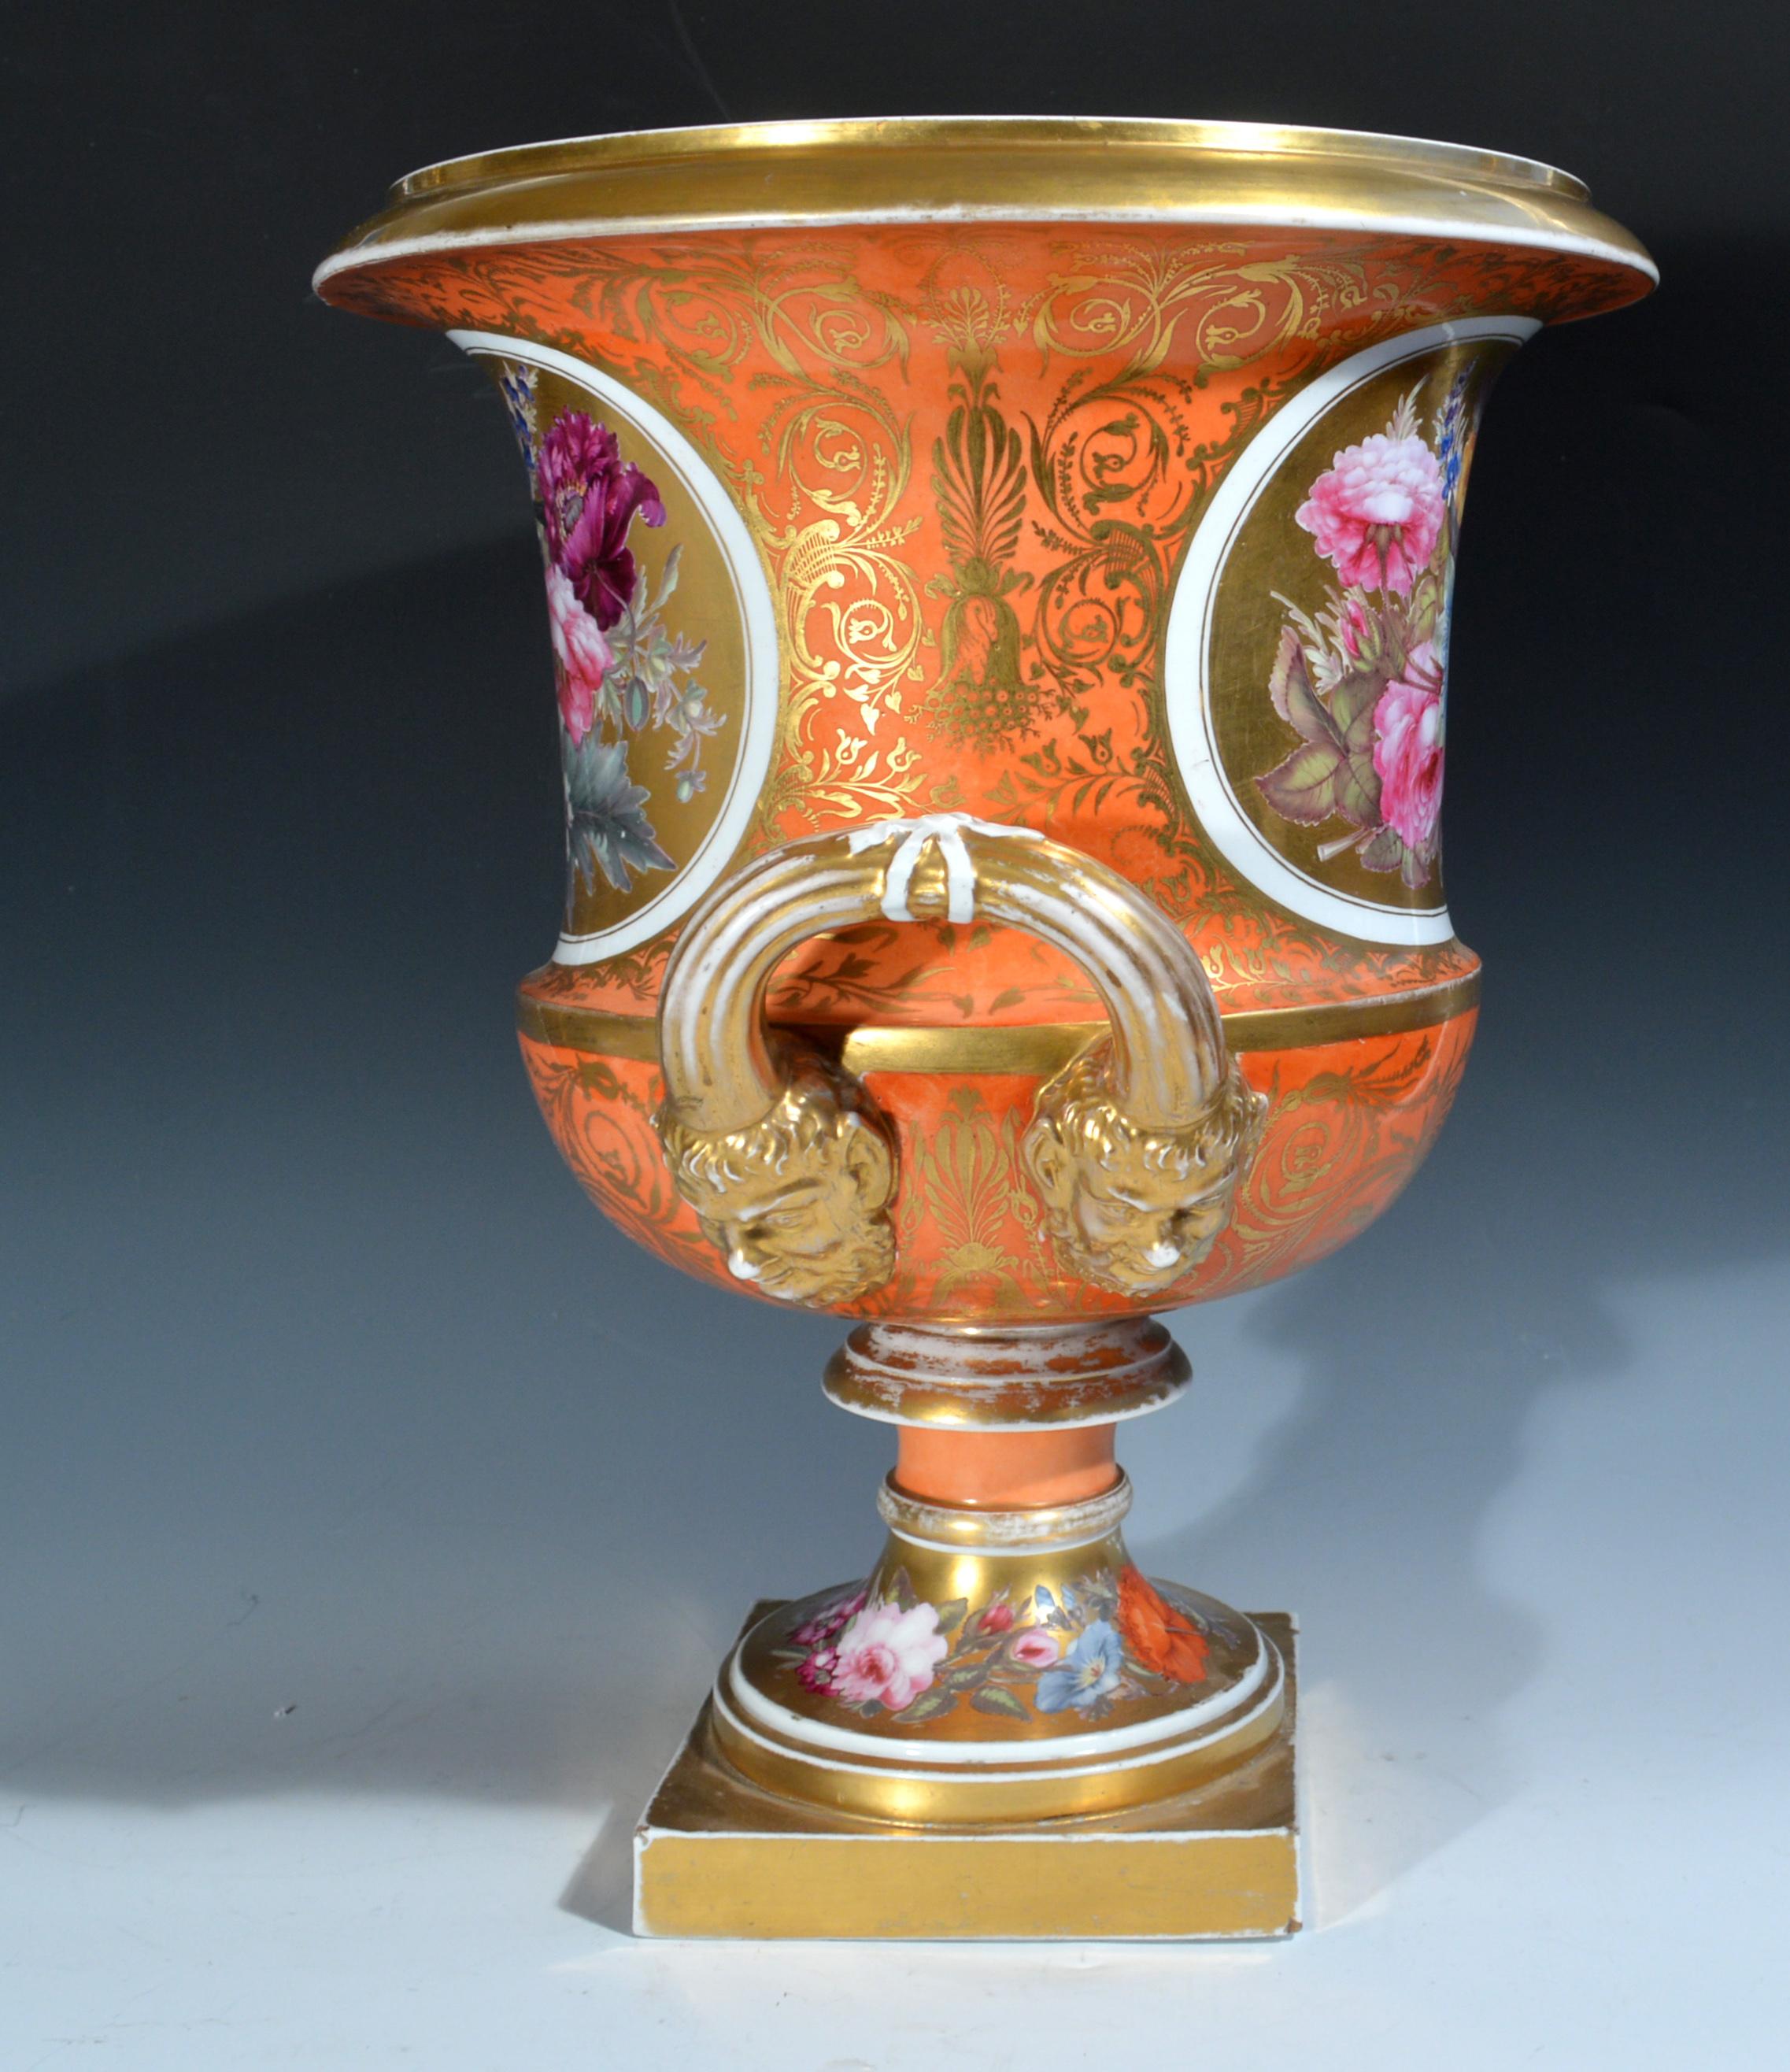 Vase en porcelaine de Chamberlain Worcester de forme Campana botanique à fond orange,
Vers 1840.

Le vase en porcelaine de Chamberlain Worcester est de forme campana avec un corps à fond orange recouvert de volutes dorées. À l'avant et à